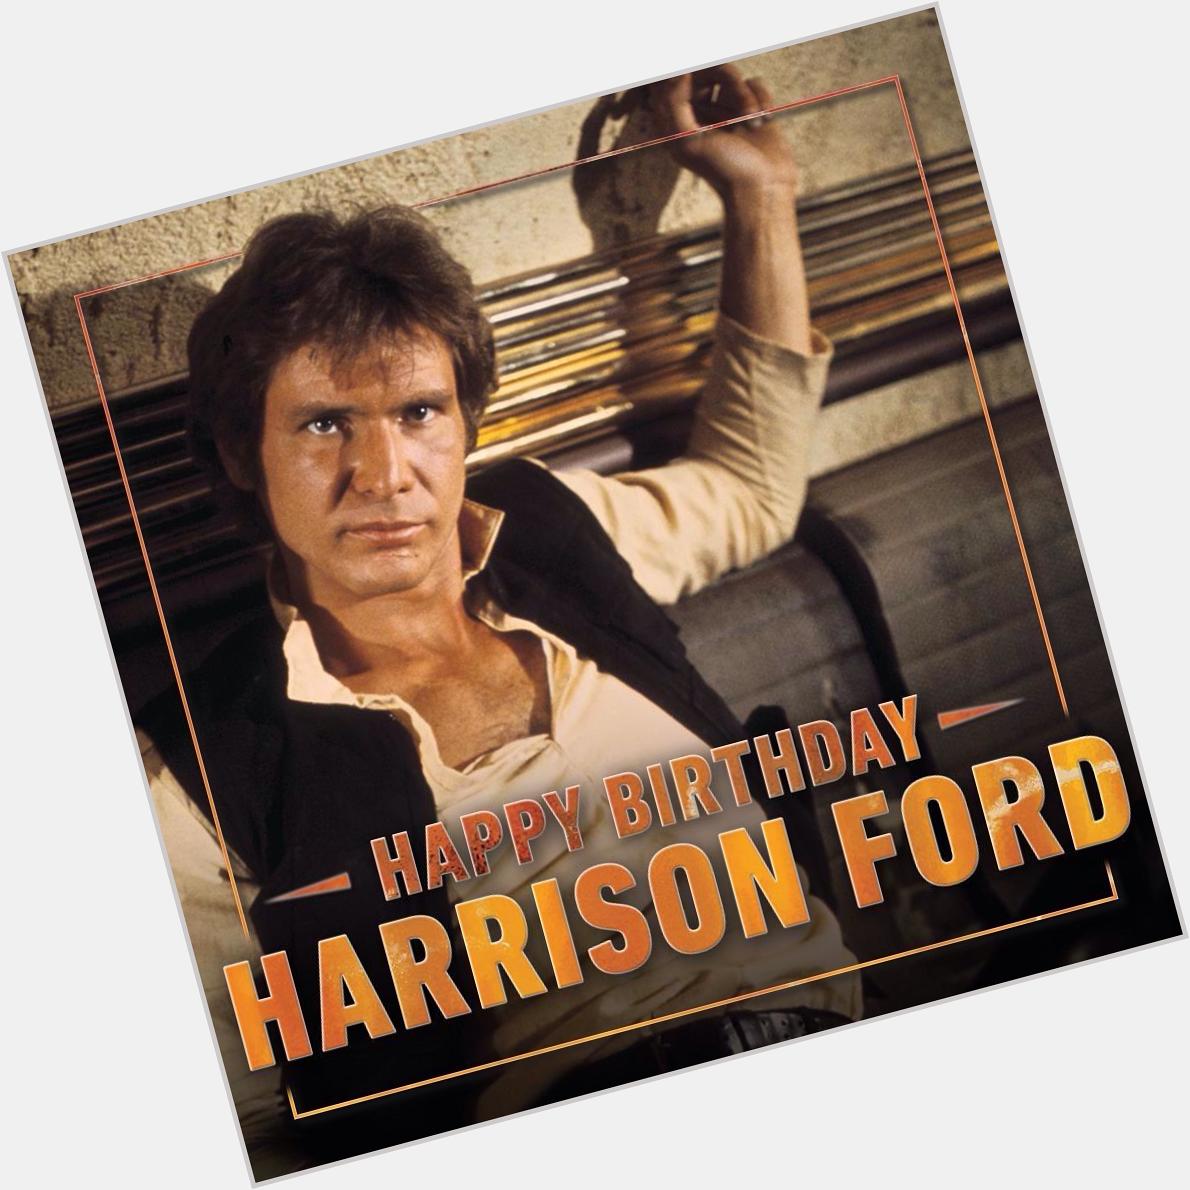 Happy Birthday Harrison Ford er wird heute 73 Jahre alt. 